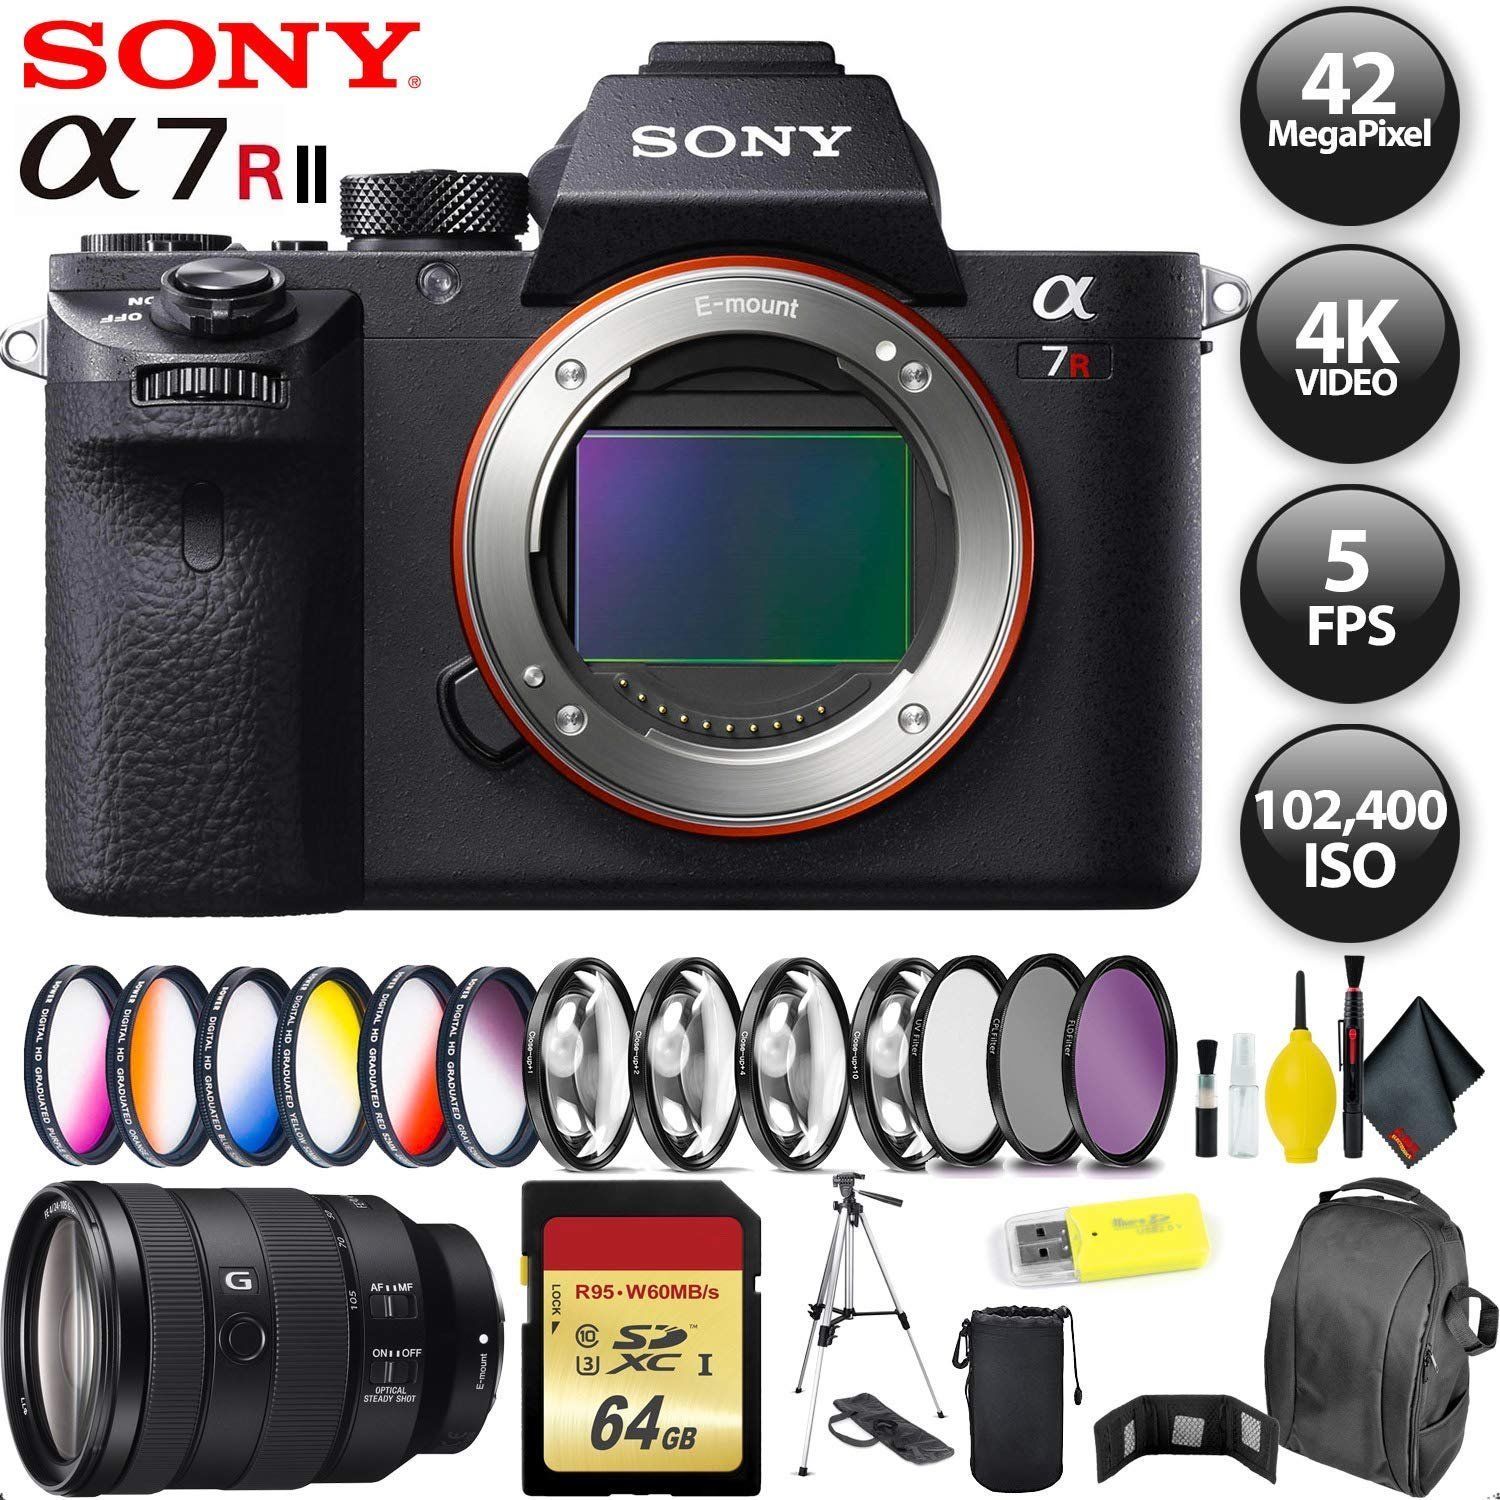 Sony Alpha a7R II Mirrorless Digital Camera + 32GB Memory Card + Sony FE 24-105mm Lens